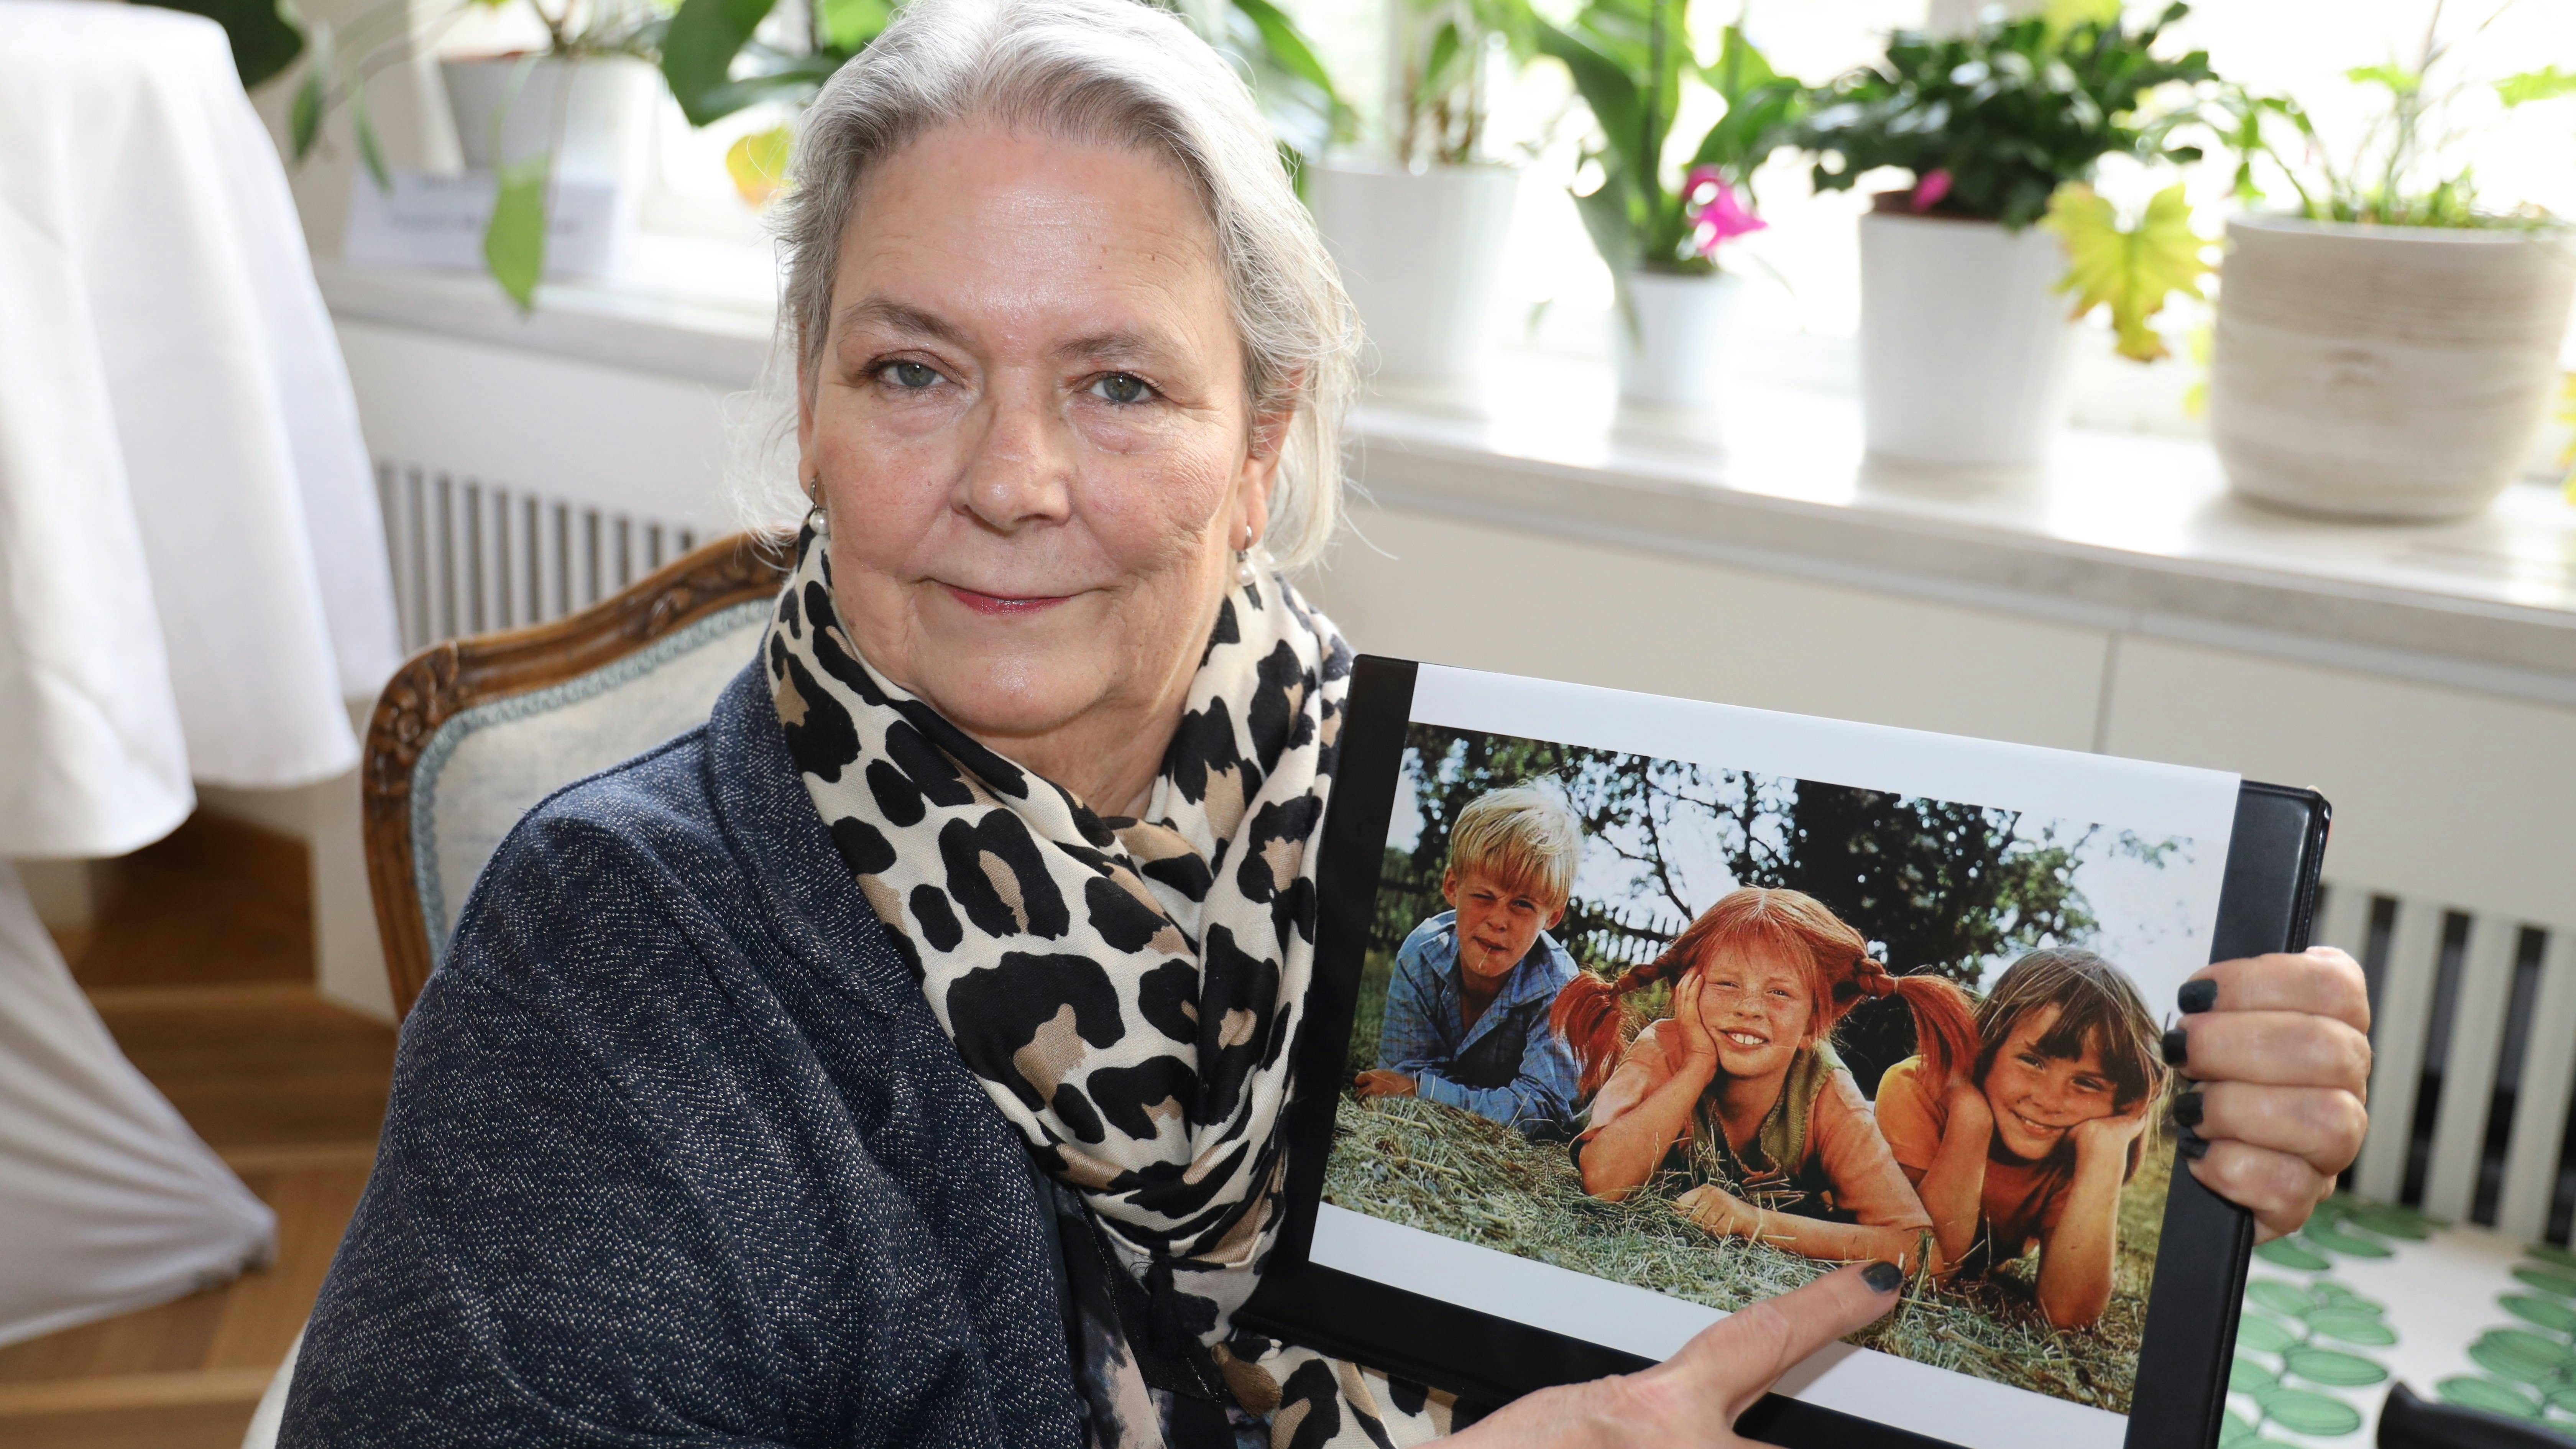 Maria Persson viser et billede frem af sig selv og sine medspillere i Pippi-serien under besøget i Østrig i sidste uge.